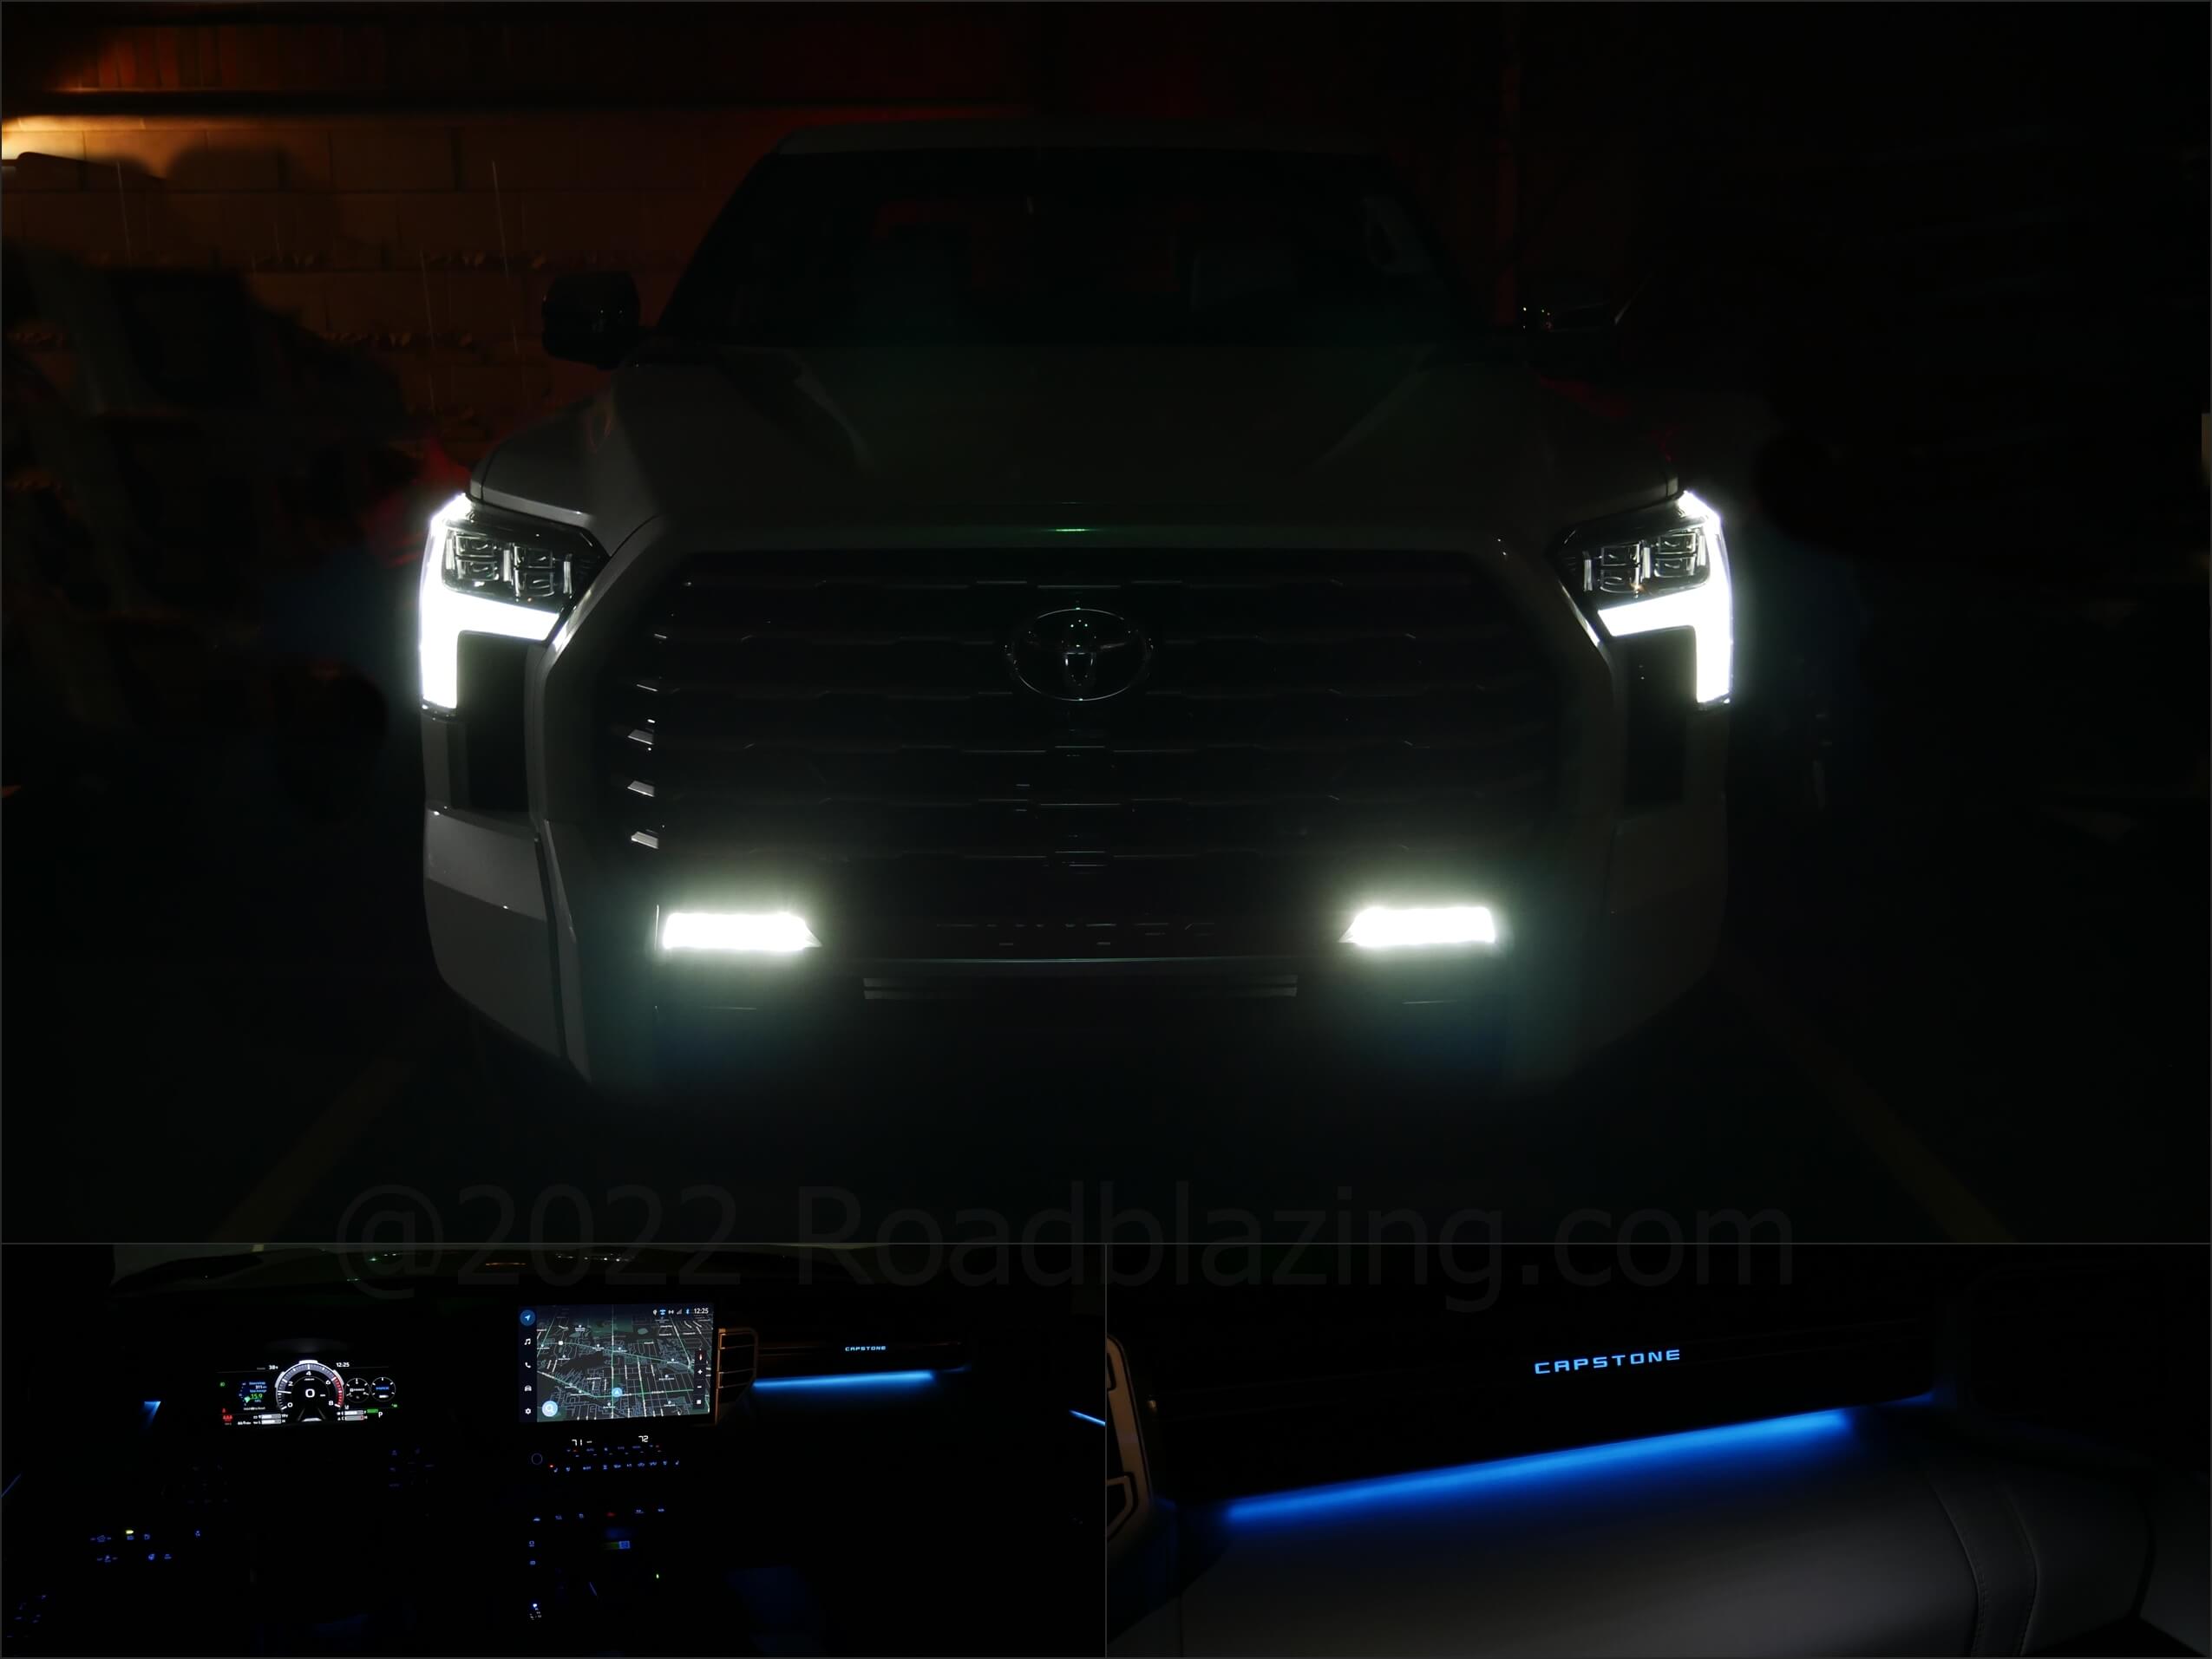 2022 Toyota Tundra CrewCab Capstone 4x4: nighttime LEDs white outside, blue inside